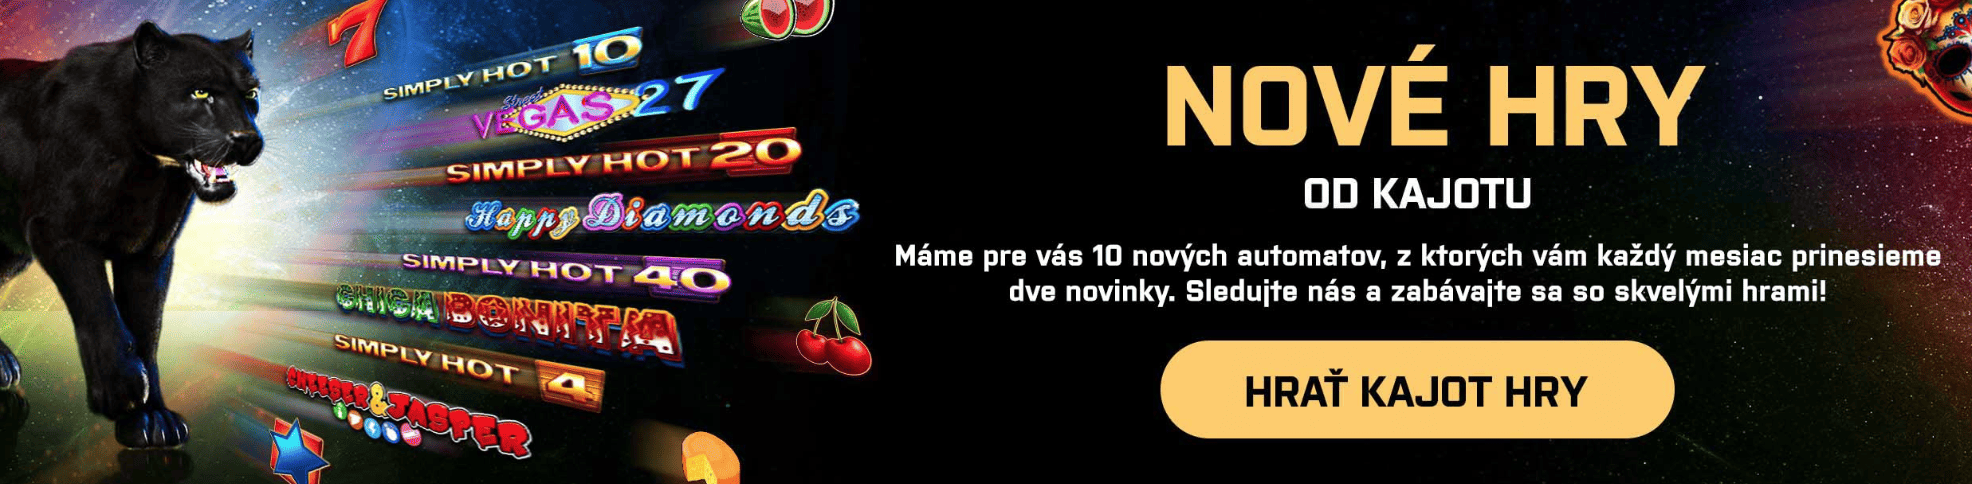 Každý mesiac nové automaty - banner Kajotwin Casino